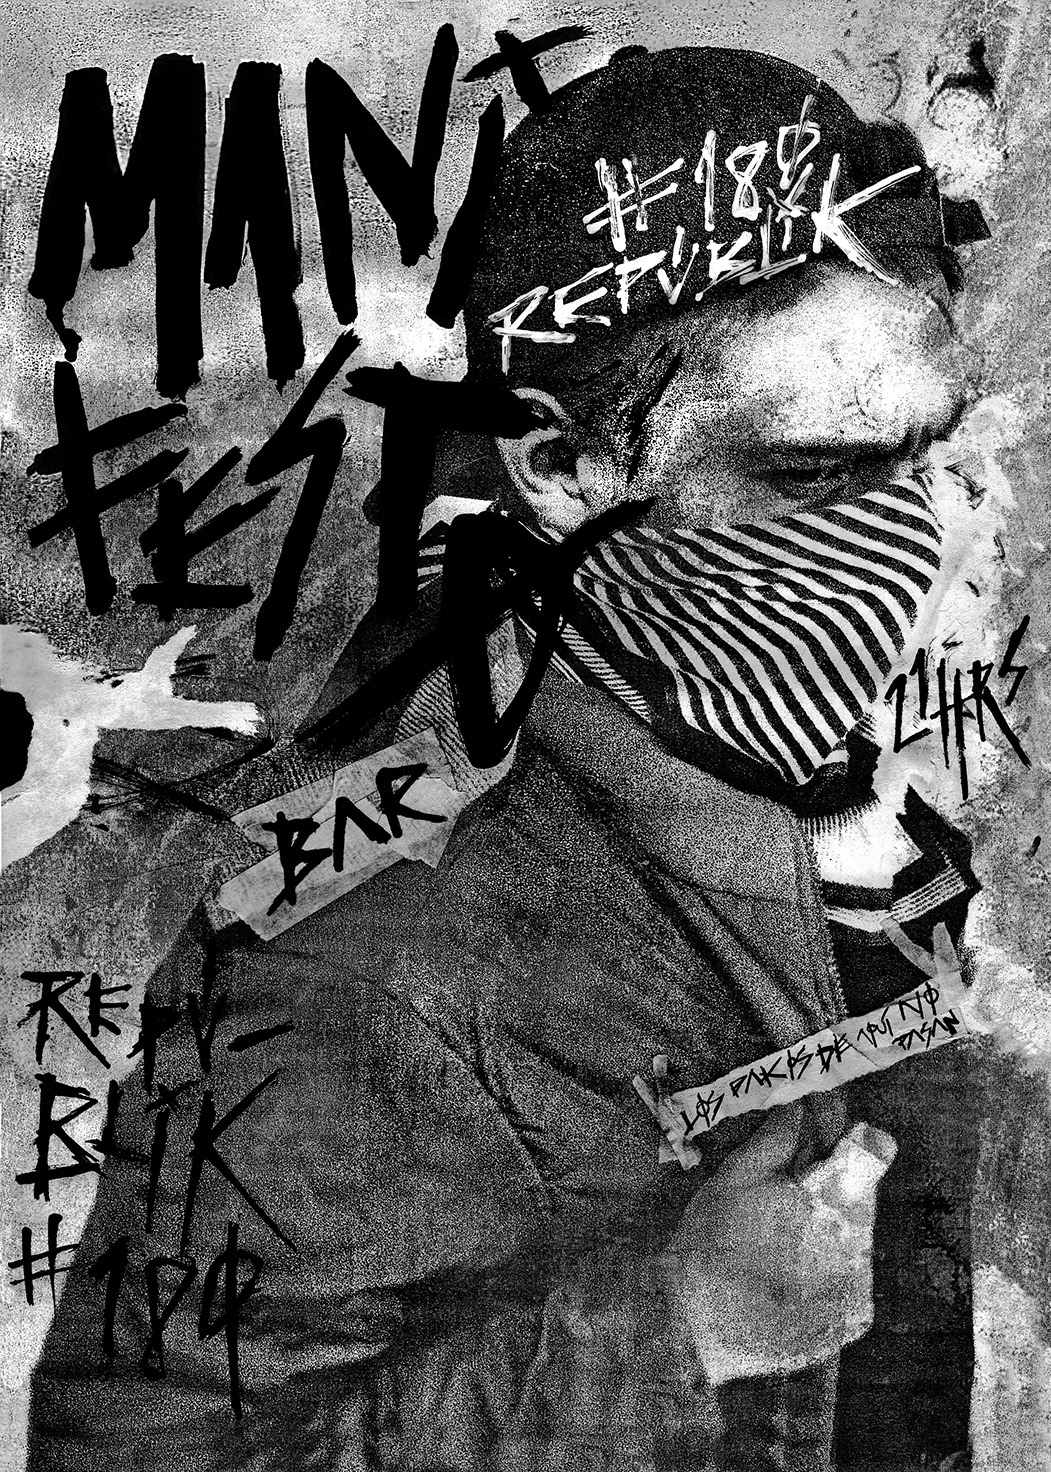 #manifestación #revolución #revolucionario #antisitema #rebelde #afiches #cartelera #Poster #revolution #blanco y negro #manifesto #bar #punk #rock